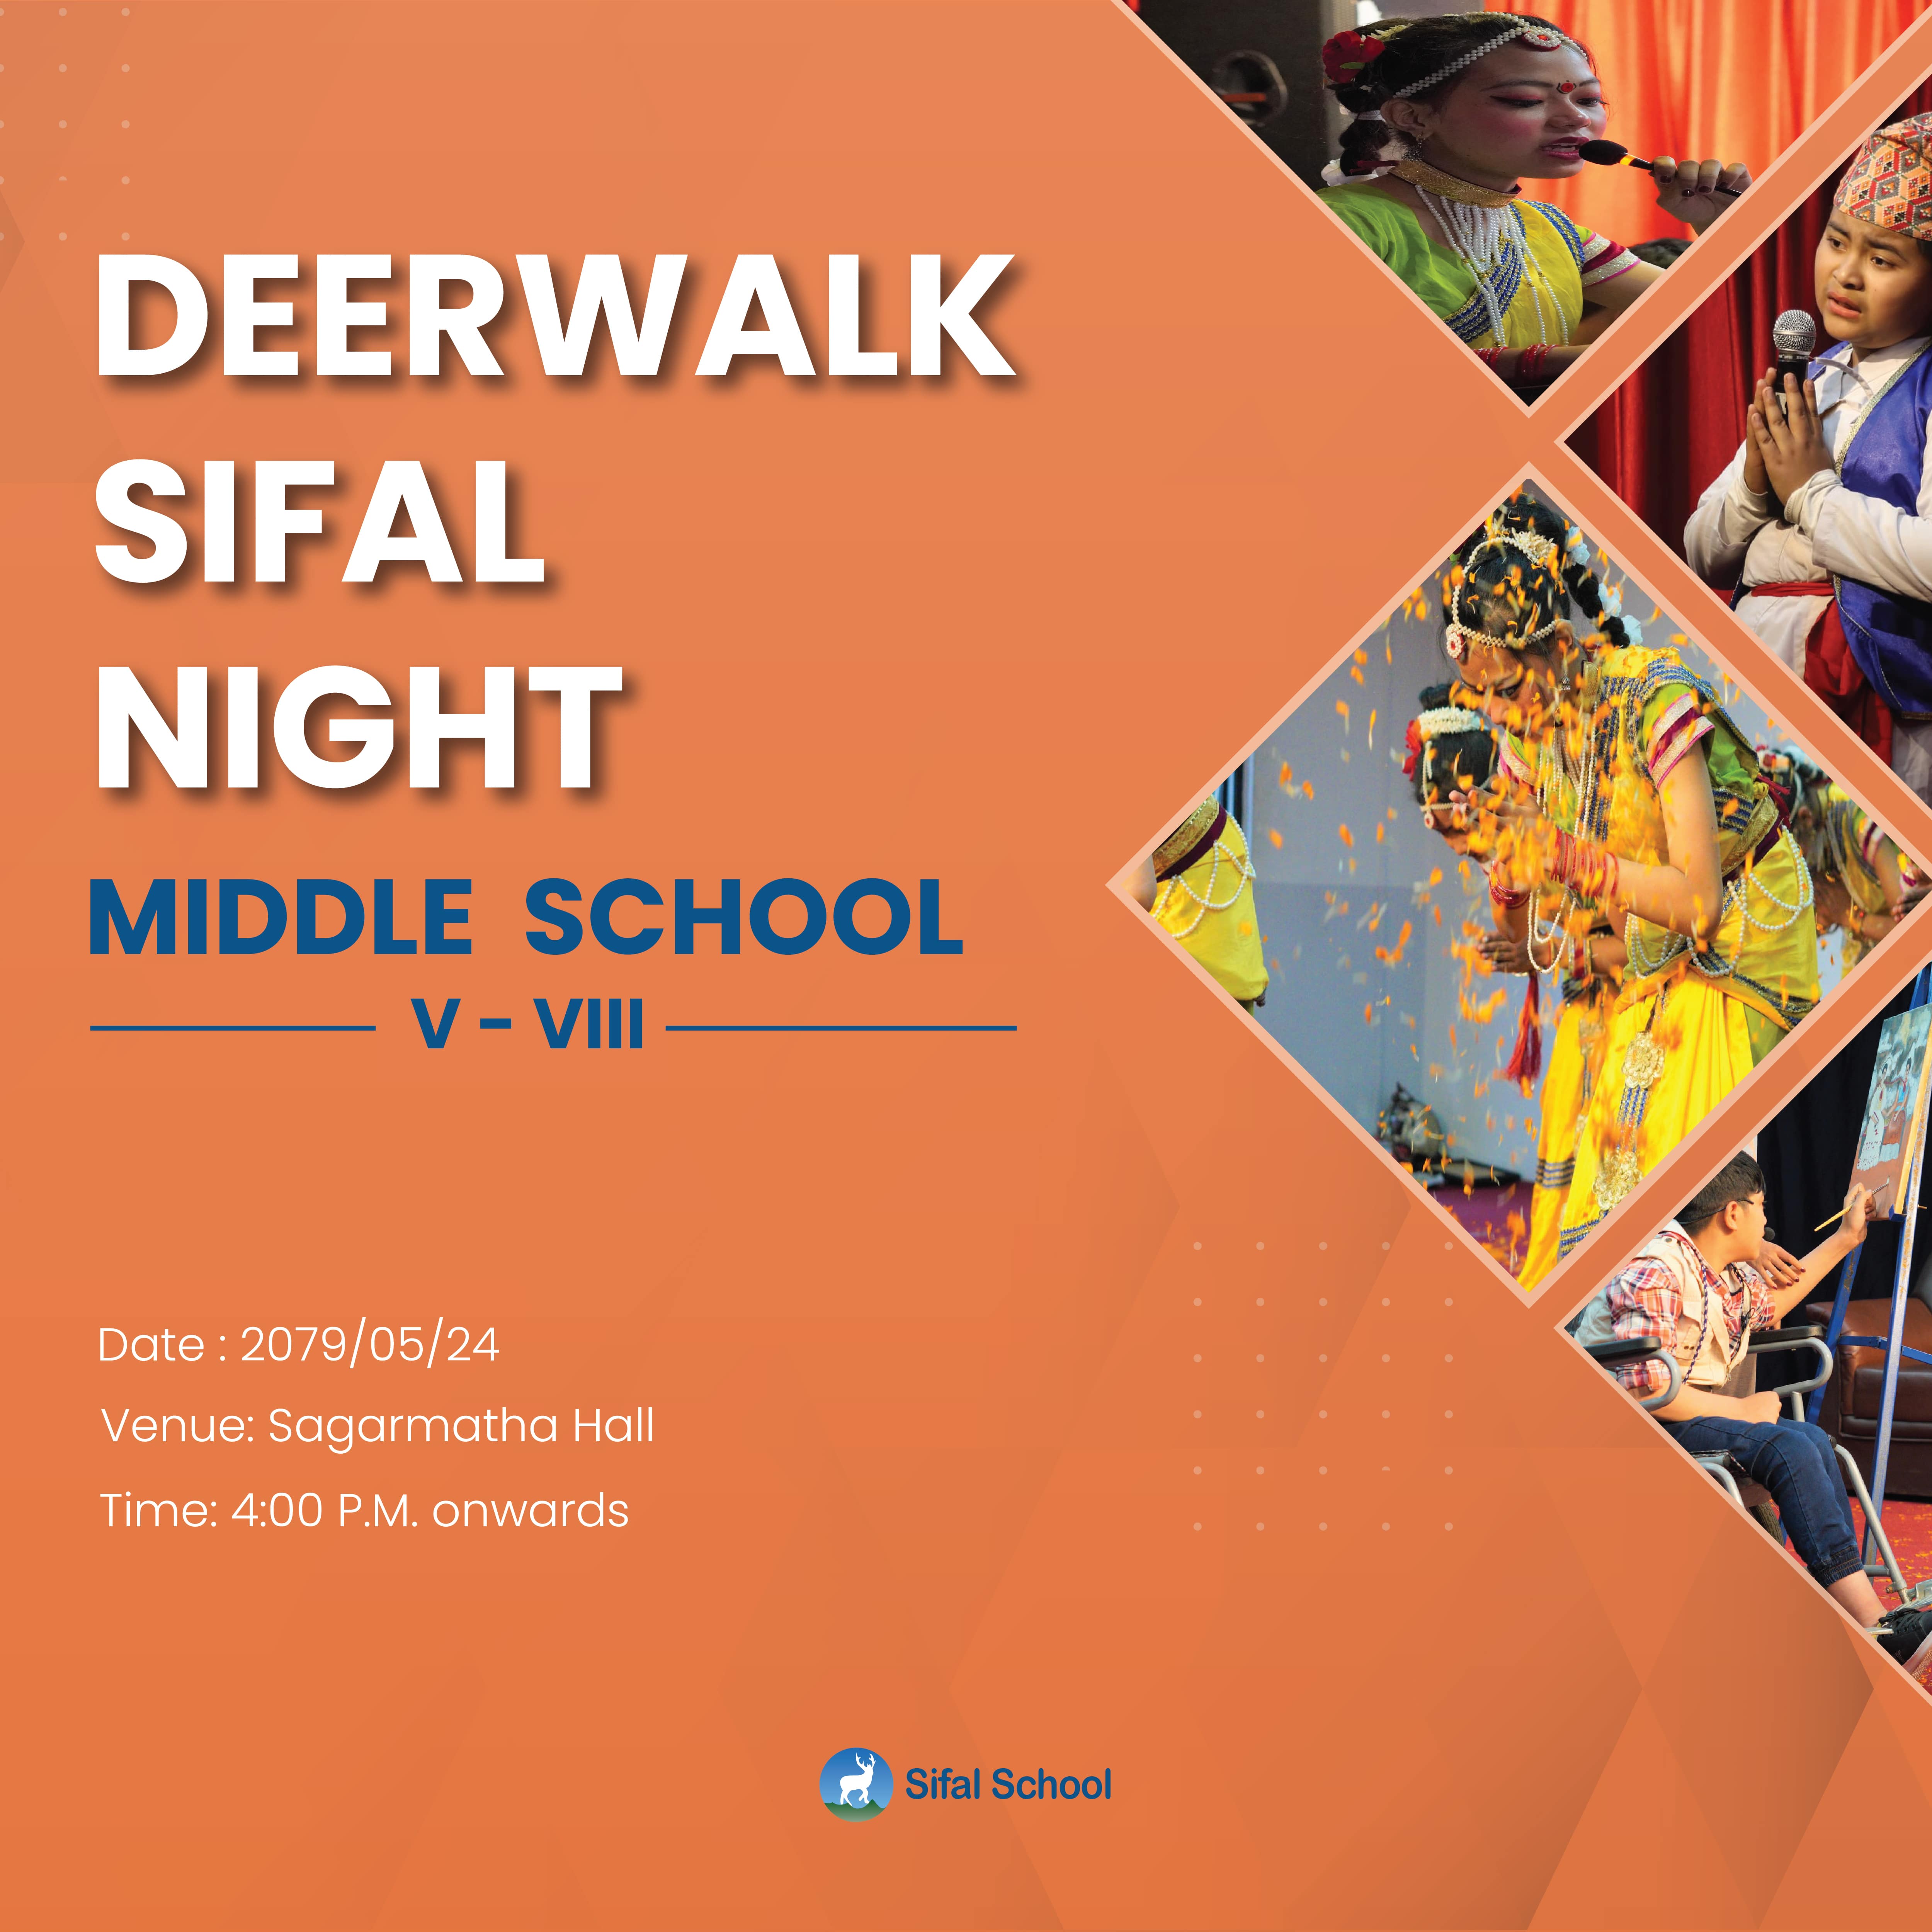 Deerwalk Sifal Night- Middle School